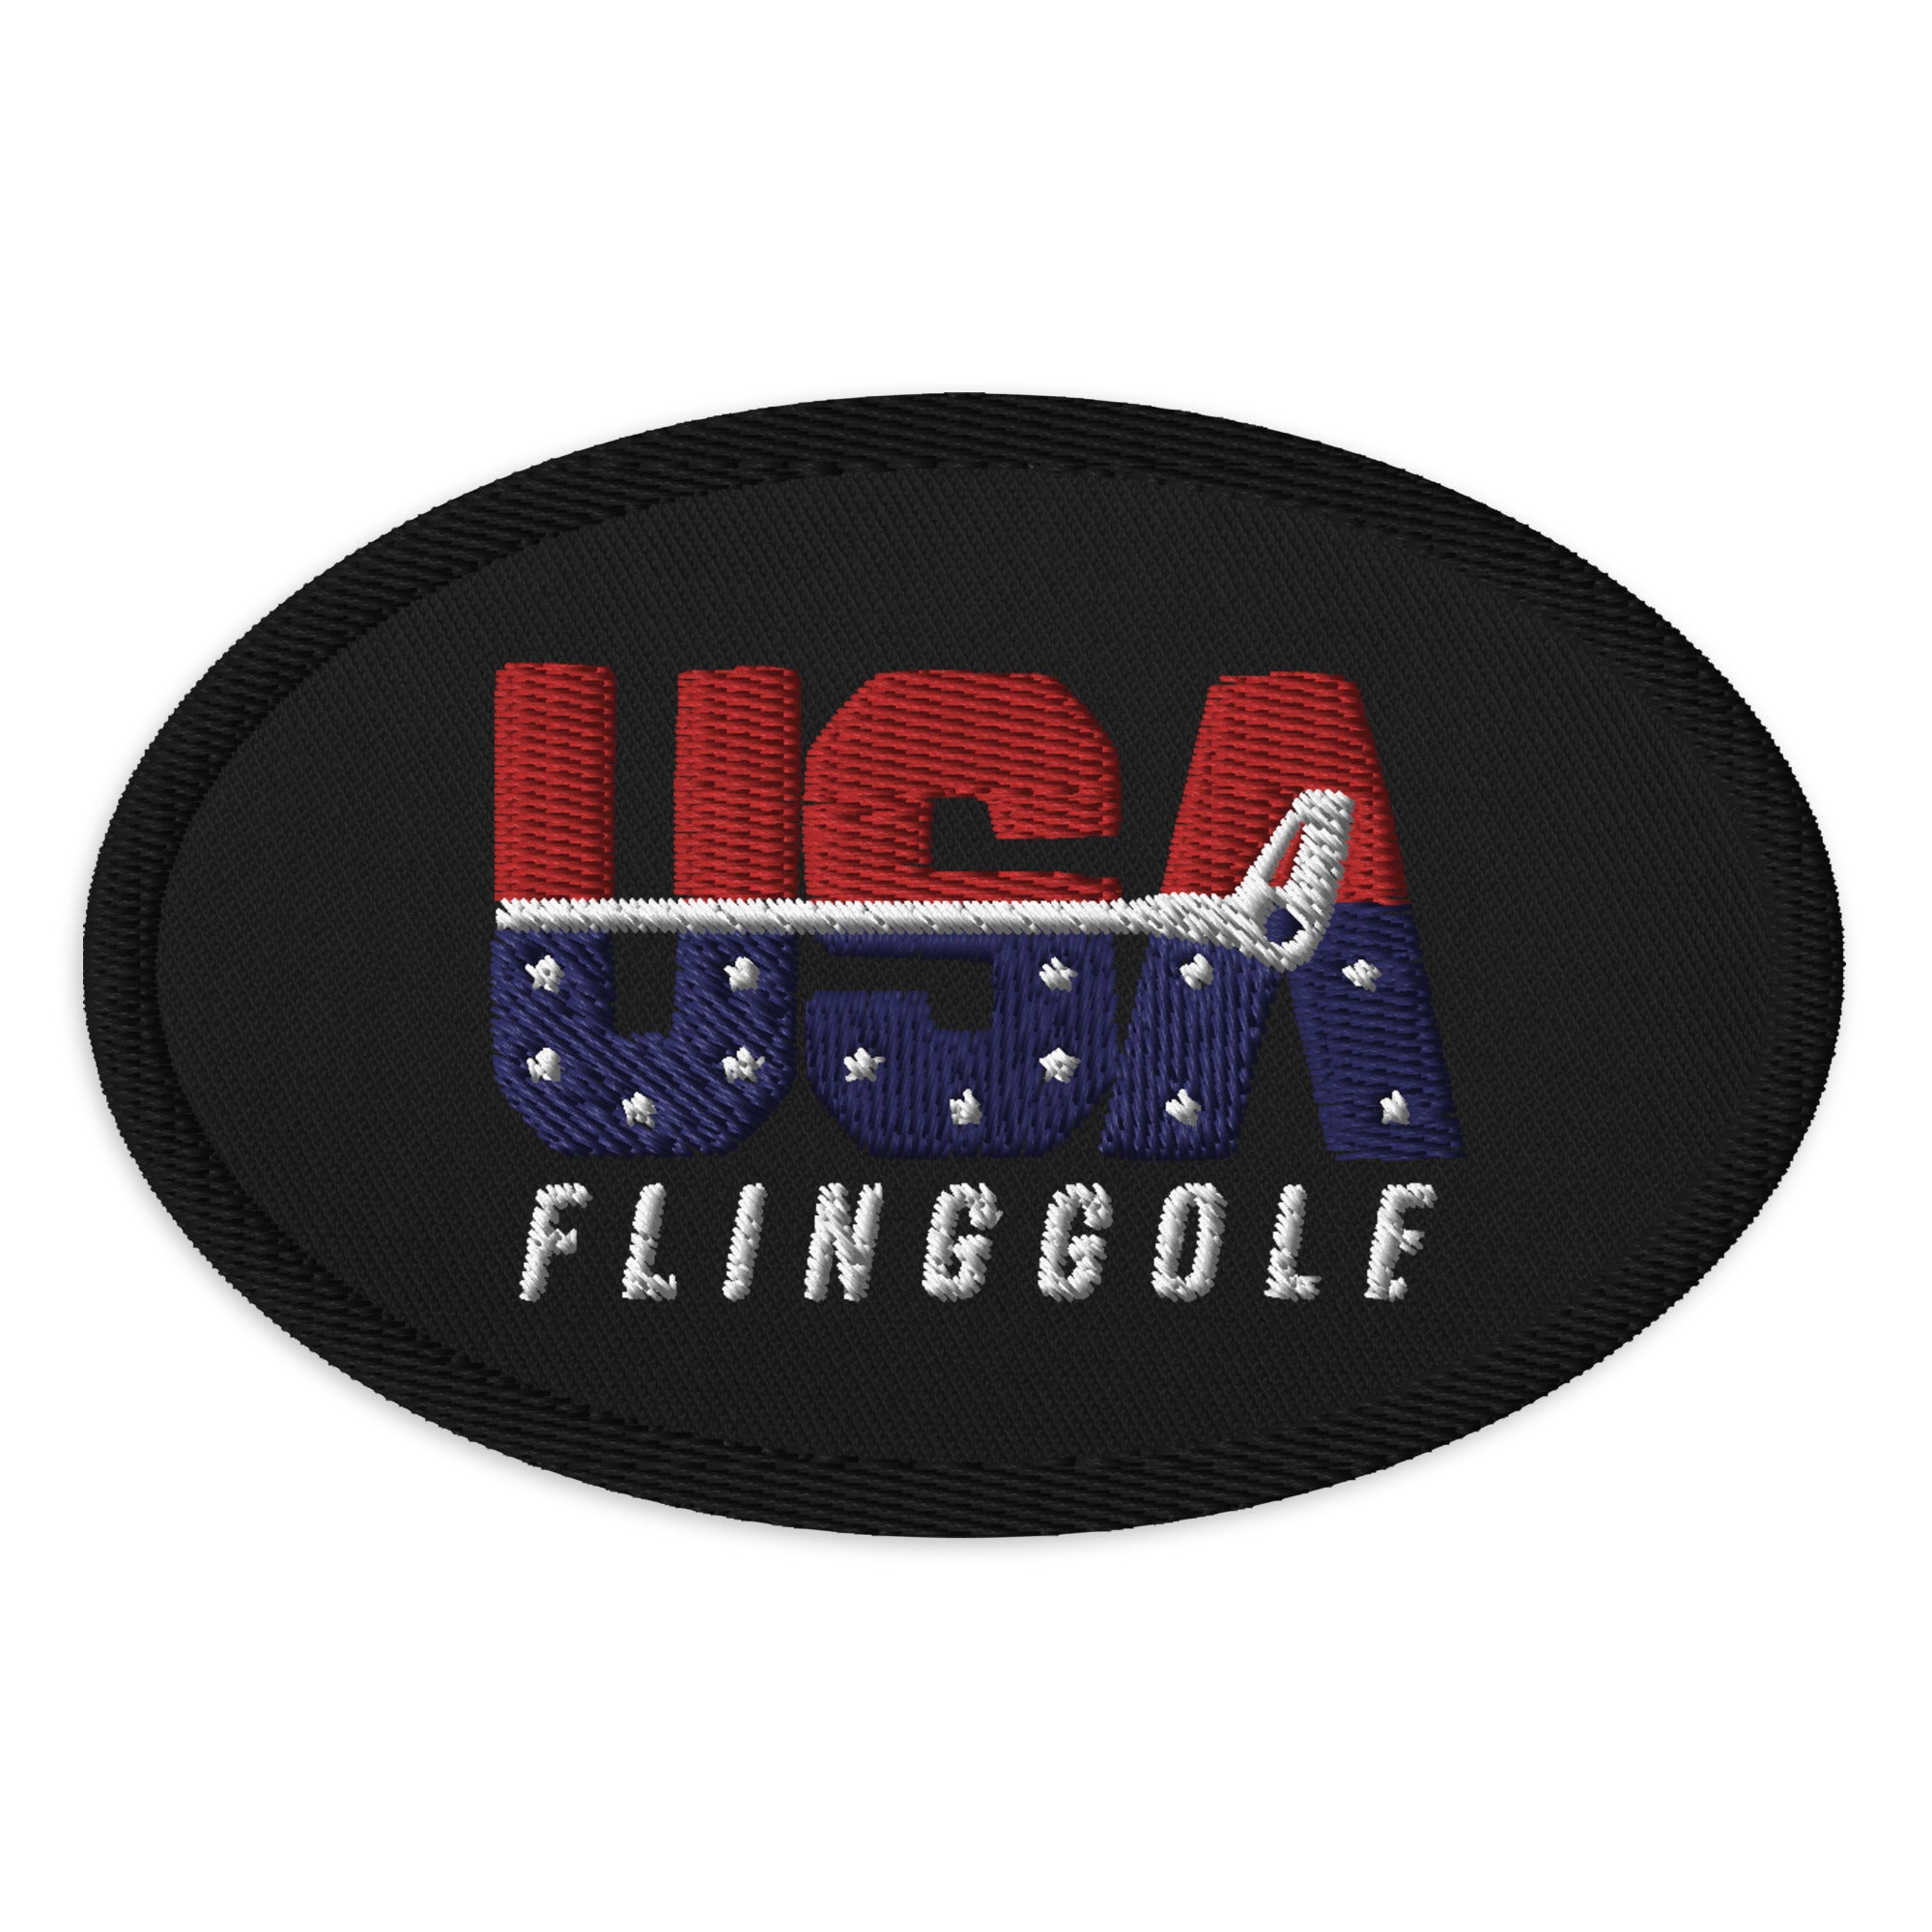 USA FlingGolf Oval Patch (Black)